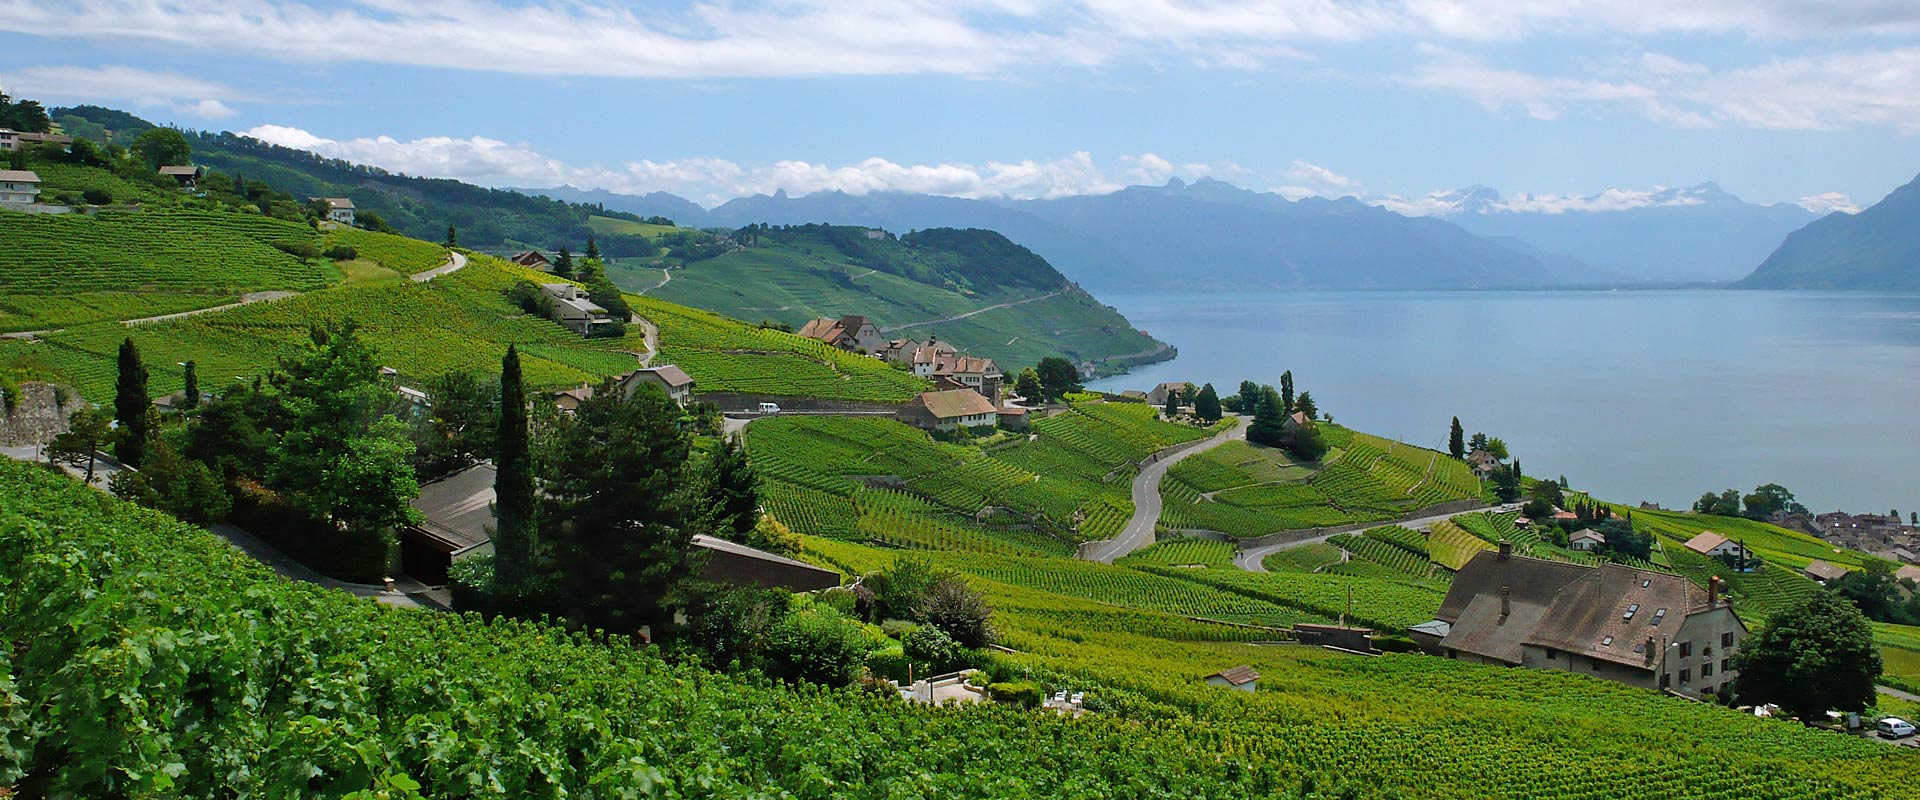 Panorama Du vignoble de Lavaux Patrimoine Mondial de l'UNESCO